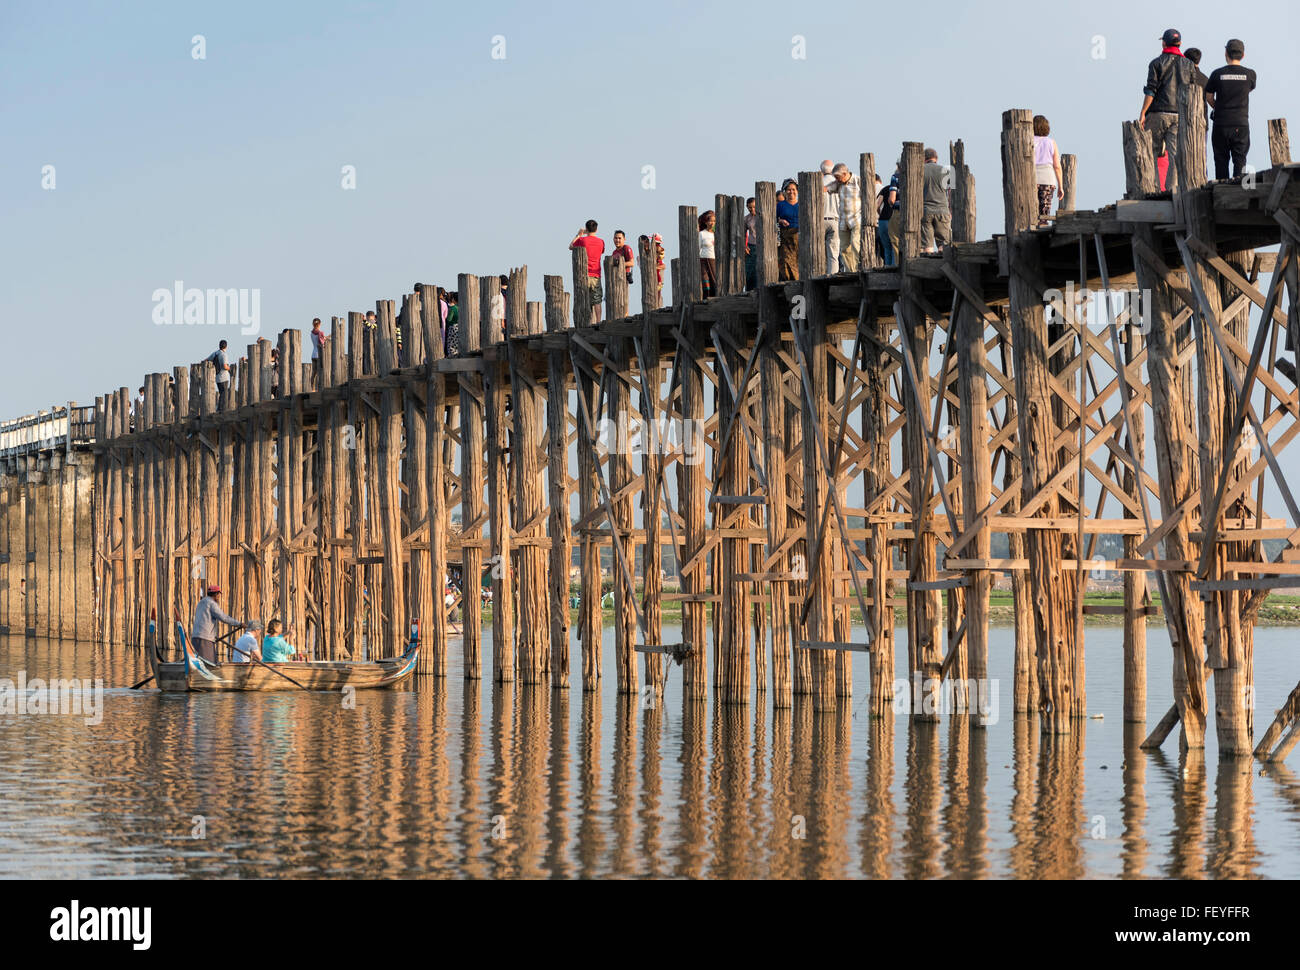 Touristen am U Bein Brücke - die längste Teakholz-Fußgängerbrücke in der Welt, Amarapura in der Nähe von Mandalay, Birma (Myanmar) Stockfoto